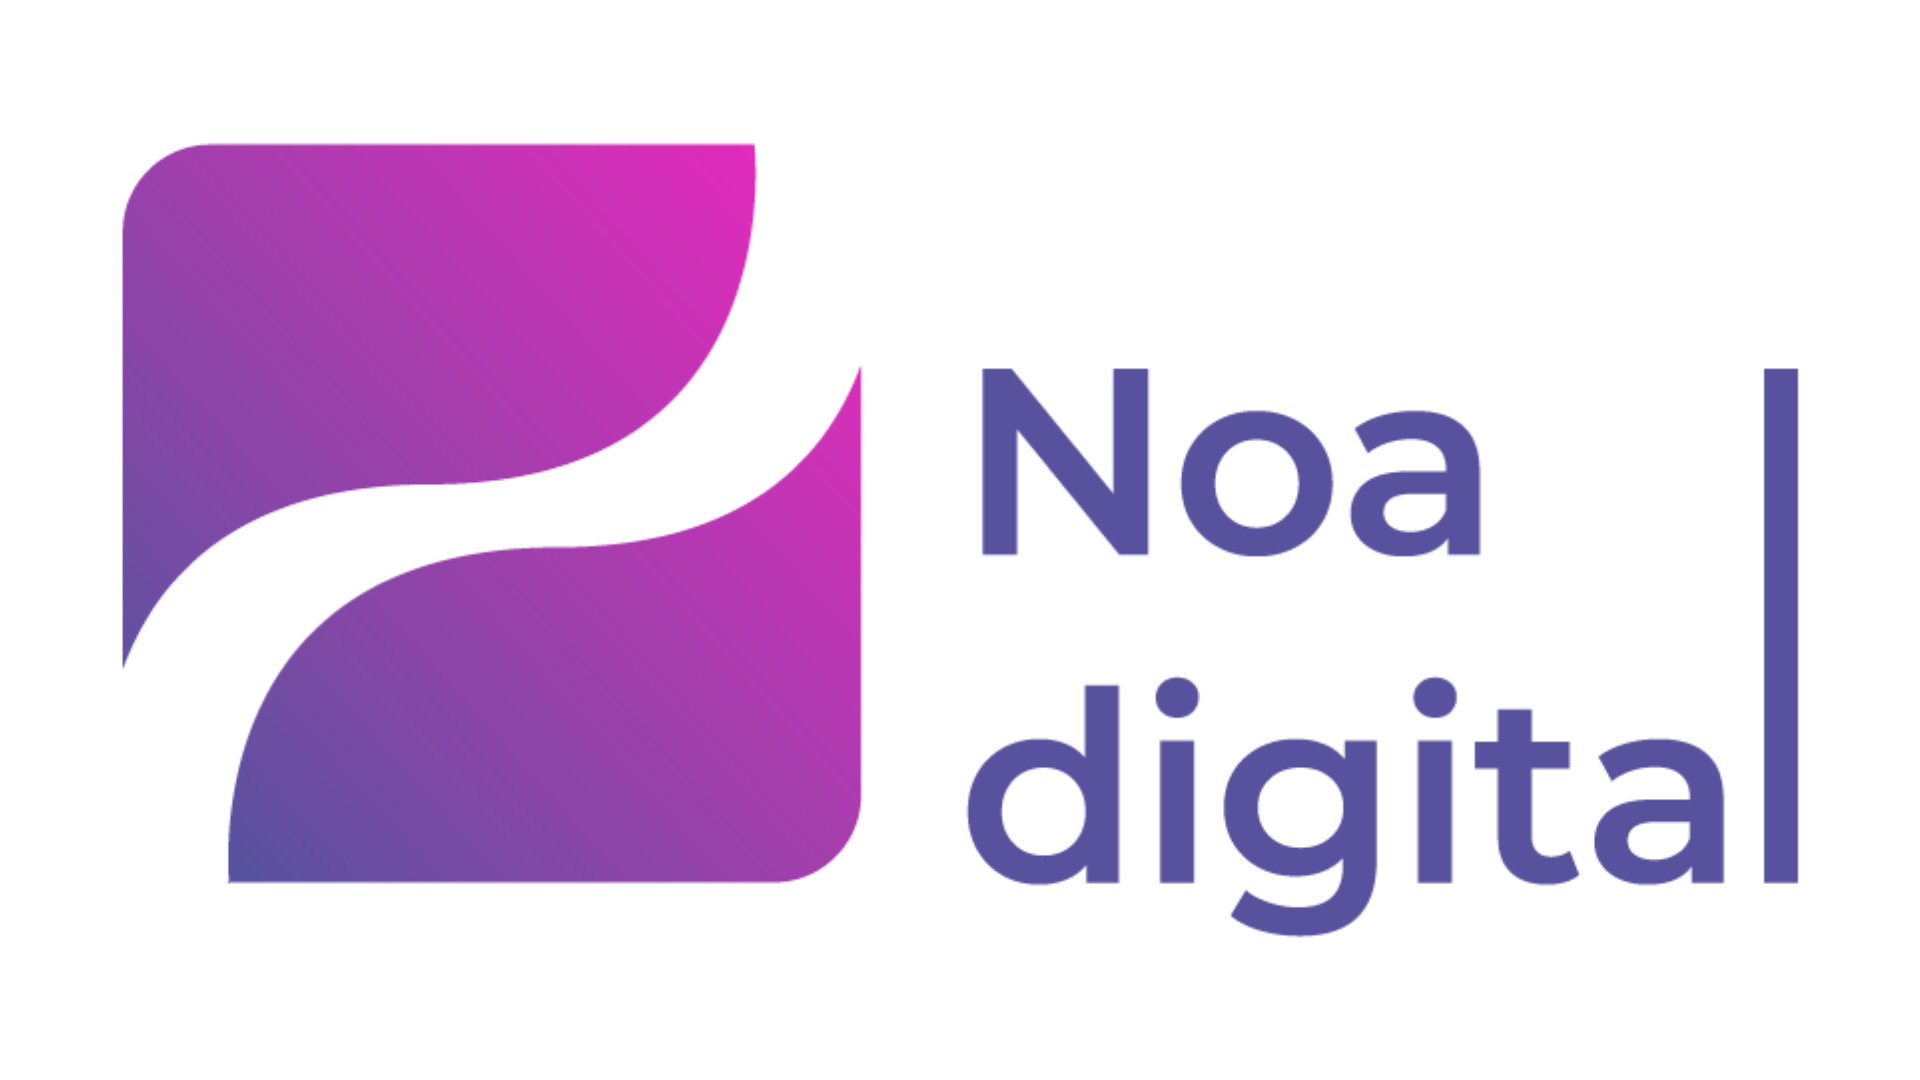 Noa Digital